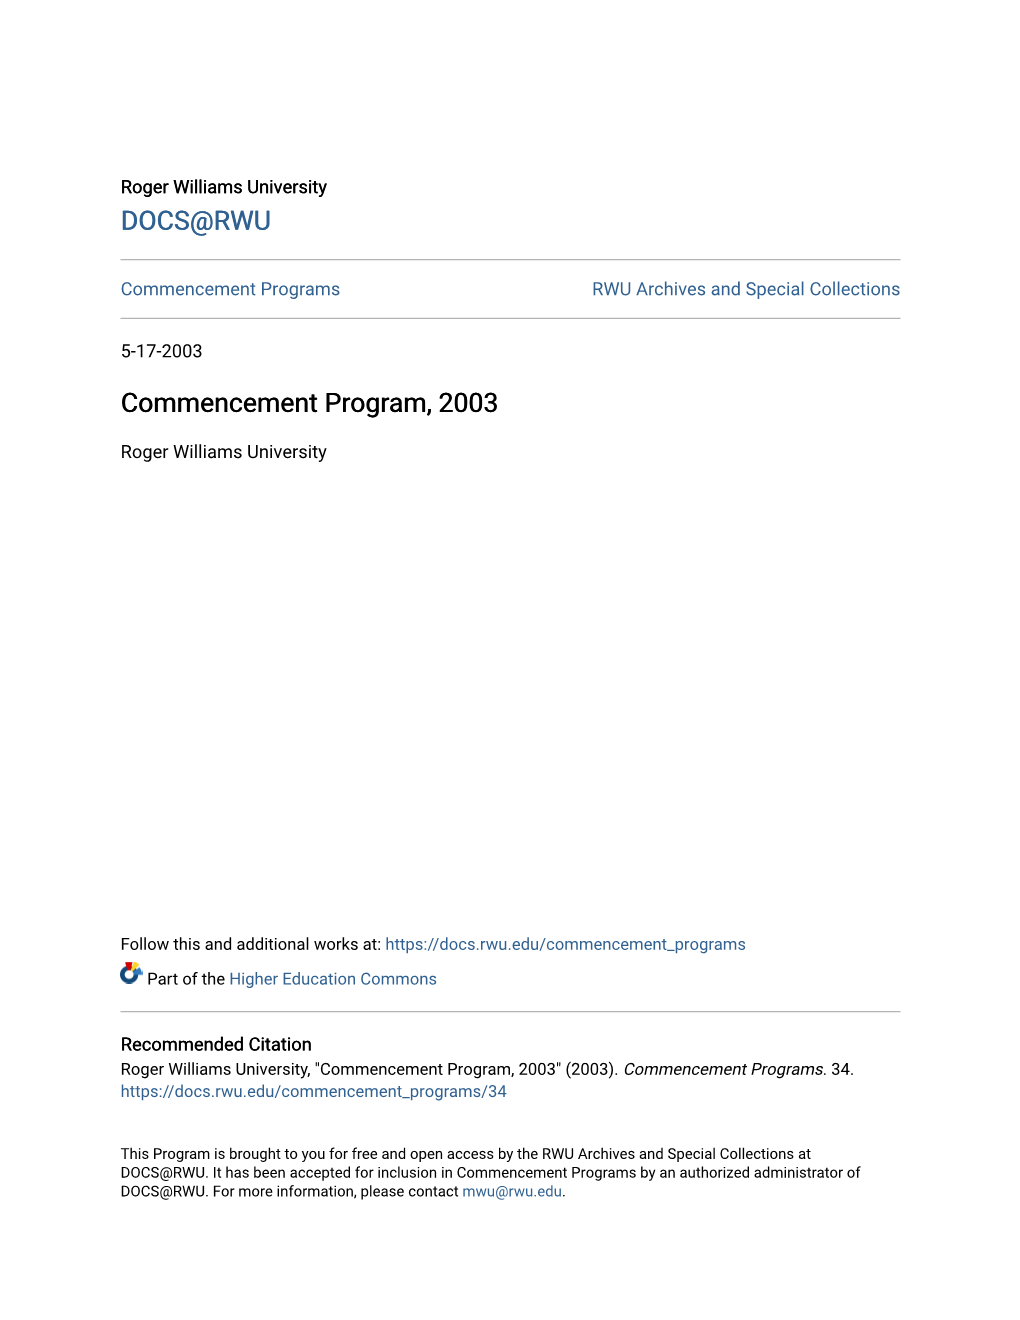 Commencement Program, 2003